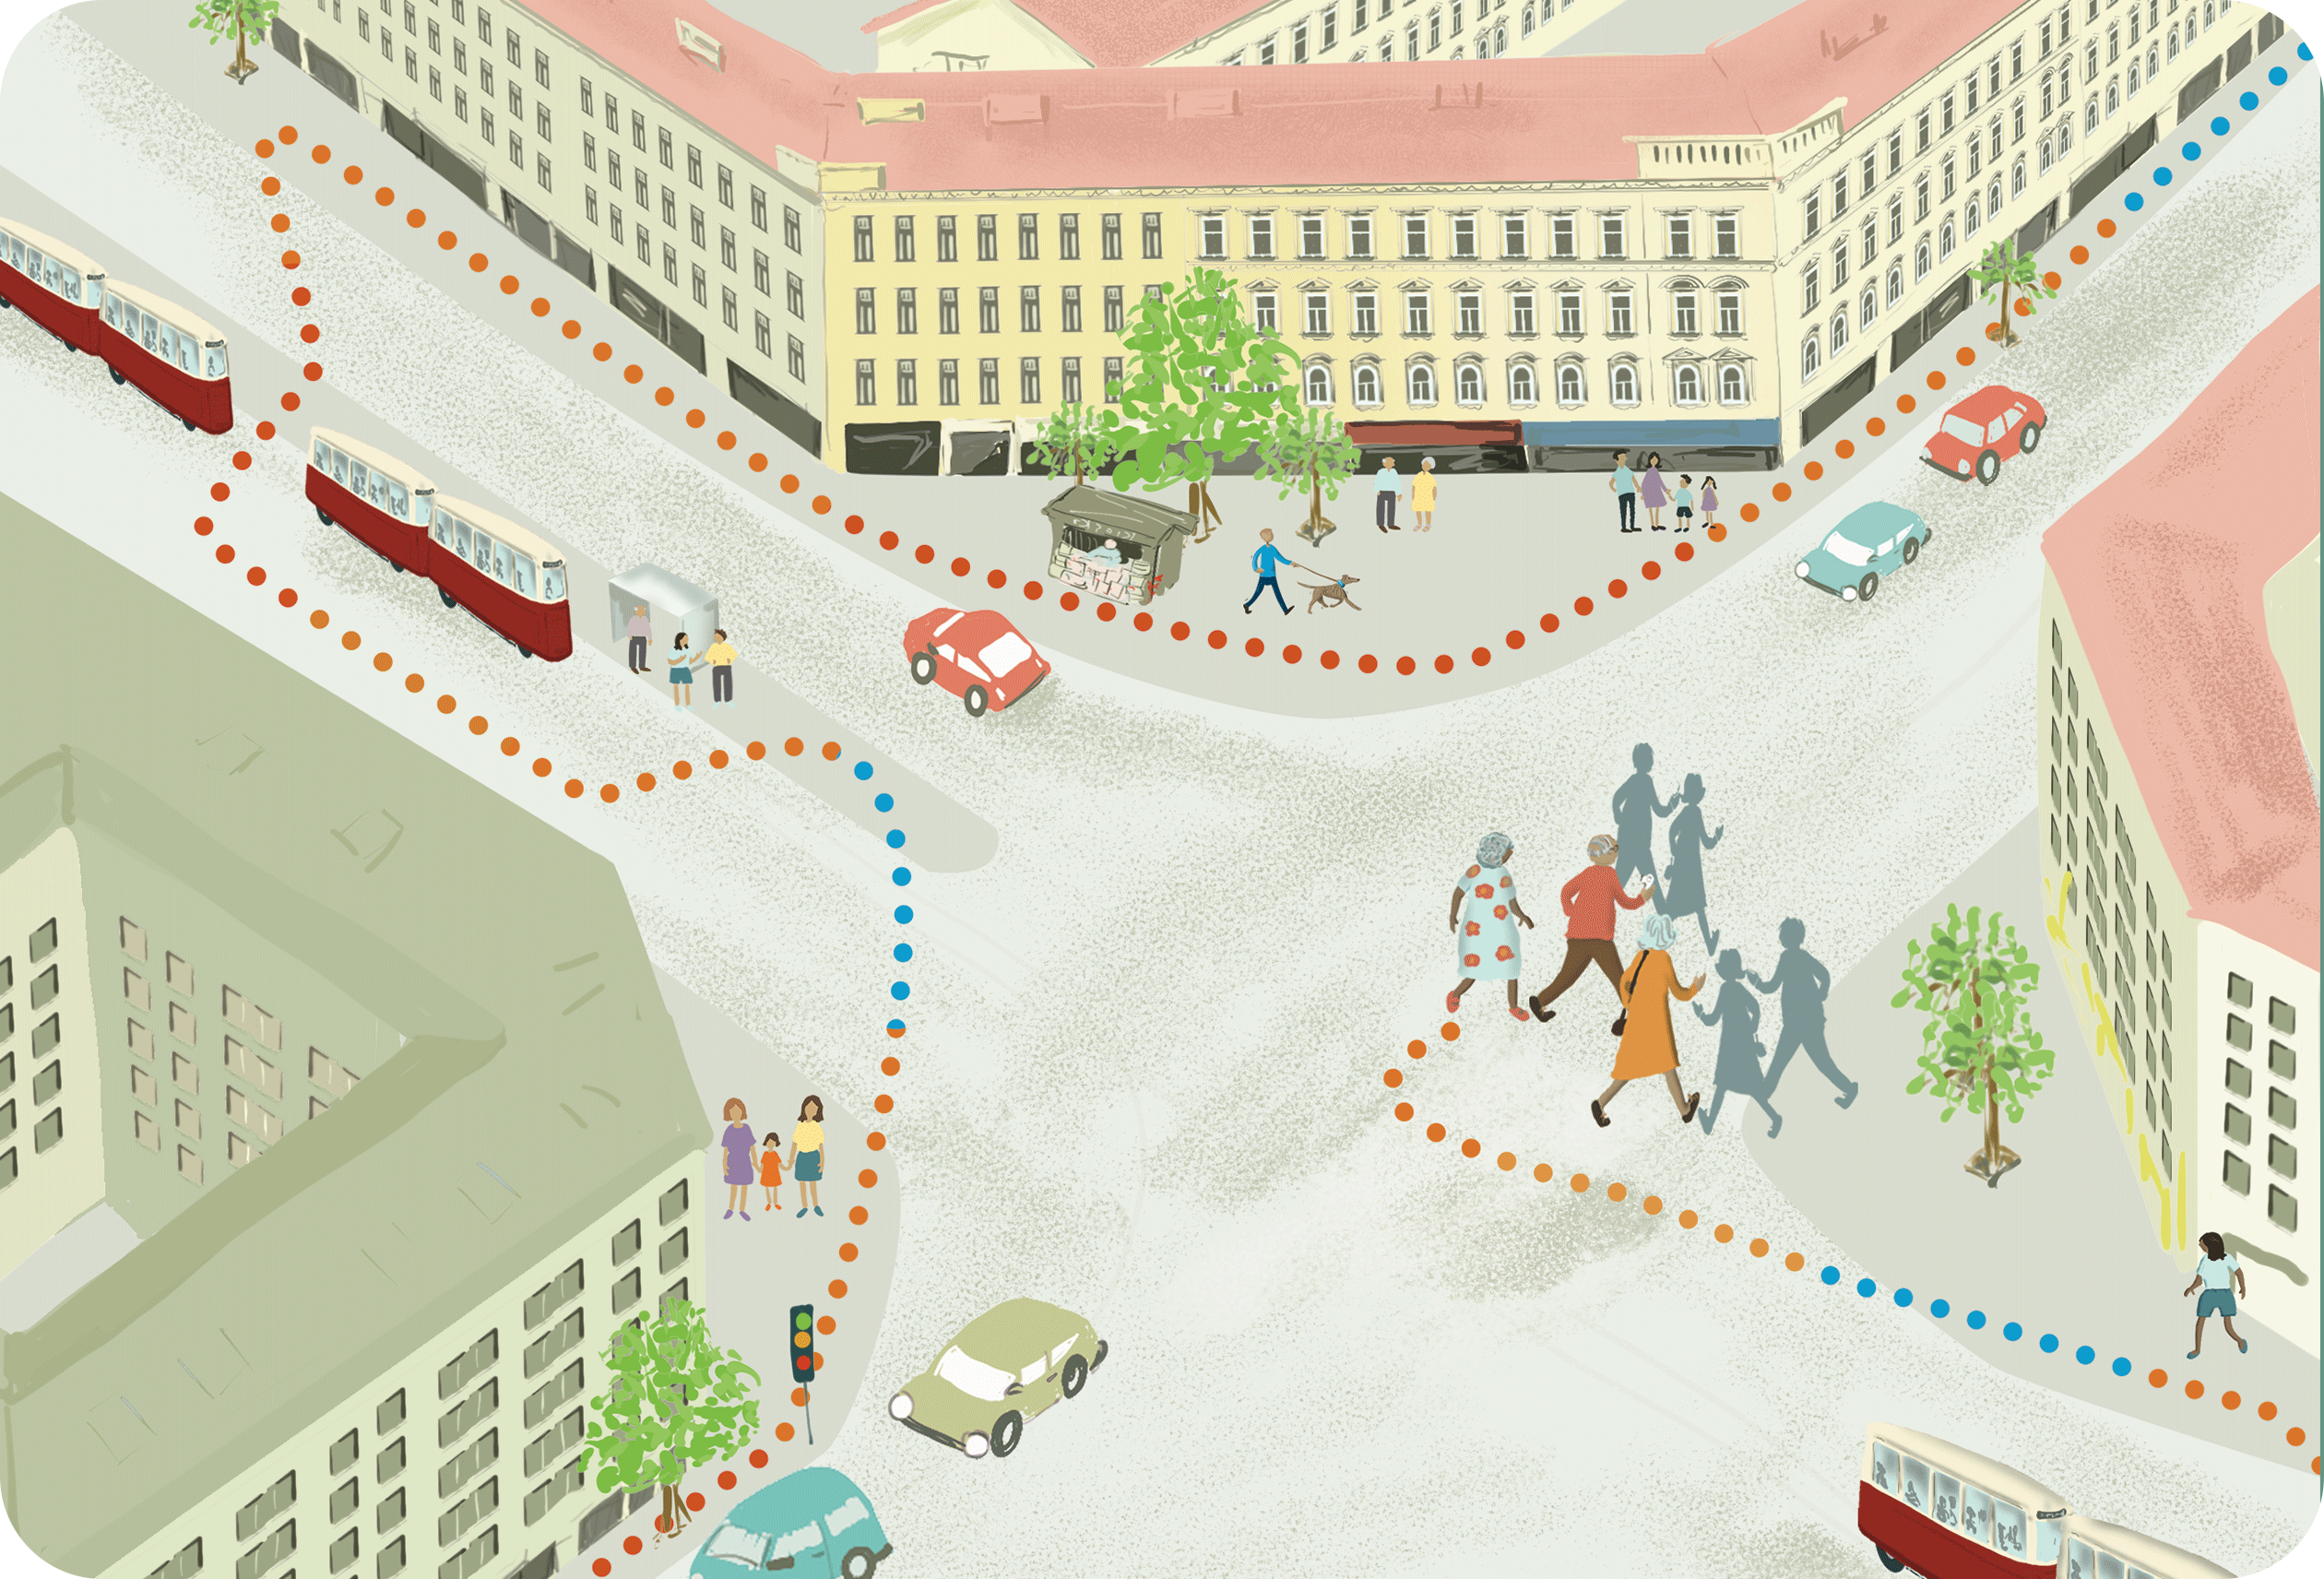 Bunte grafische Darstellung einer Straßenkreuzung mit eingezeichneten Gehwegen und einer Straßenbahn. Copyright: Verity Harrison.